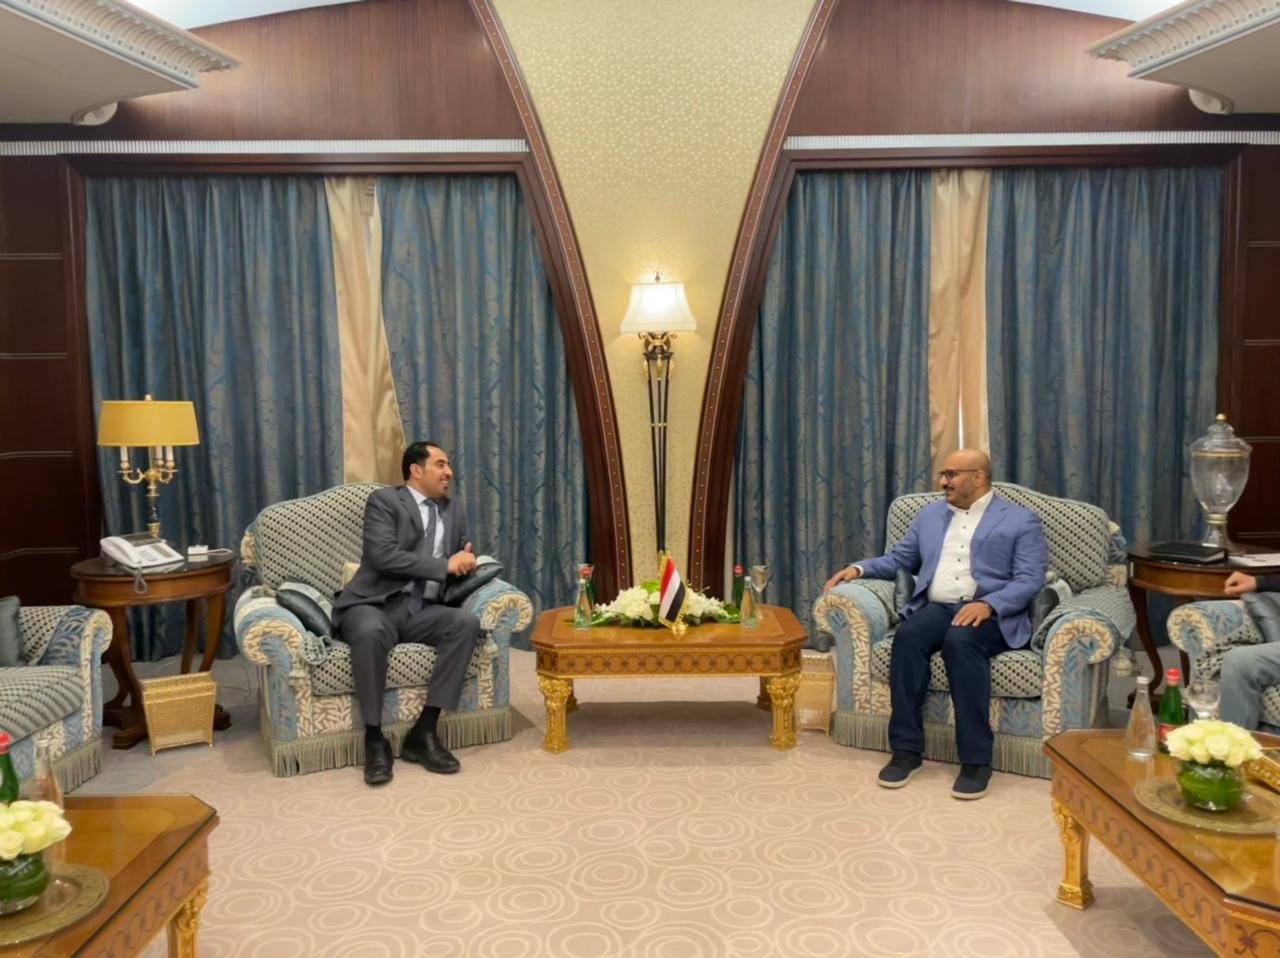 العميد «طارق صالح» يلتقي عددا من الوزراء والمحافظين - دعا لوحده الصف ضد «الحوثي» وتحدث عن موعد عودة المجلس الرئاسي للعمل بالمحافظات المحررة